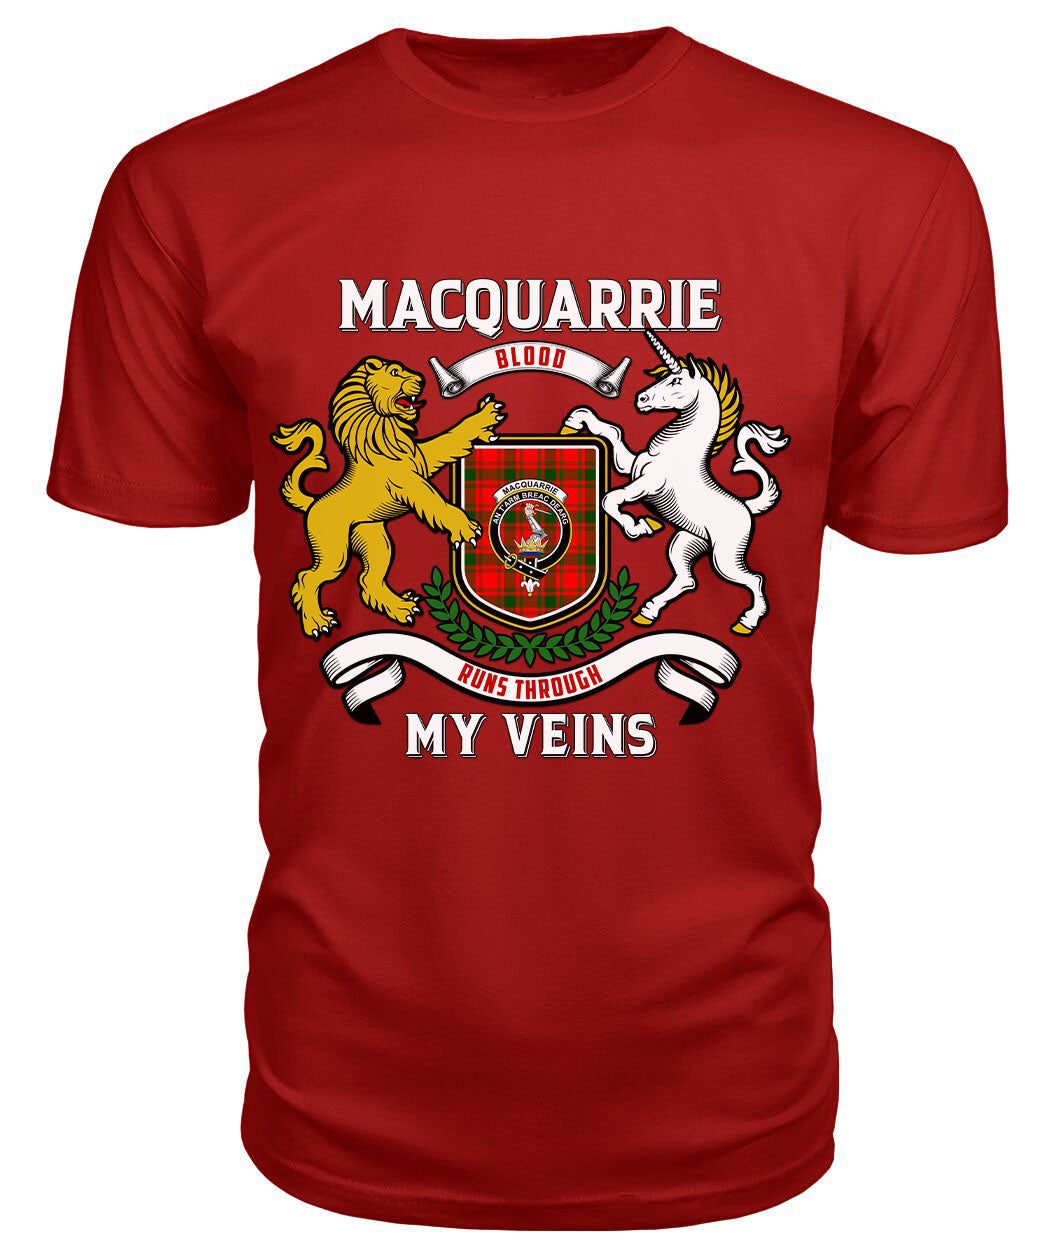 MacQuarrie Tartan Crest 2D T-shirt - Blood Runs Through My Veins Style